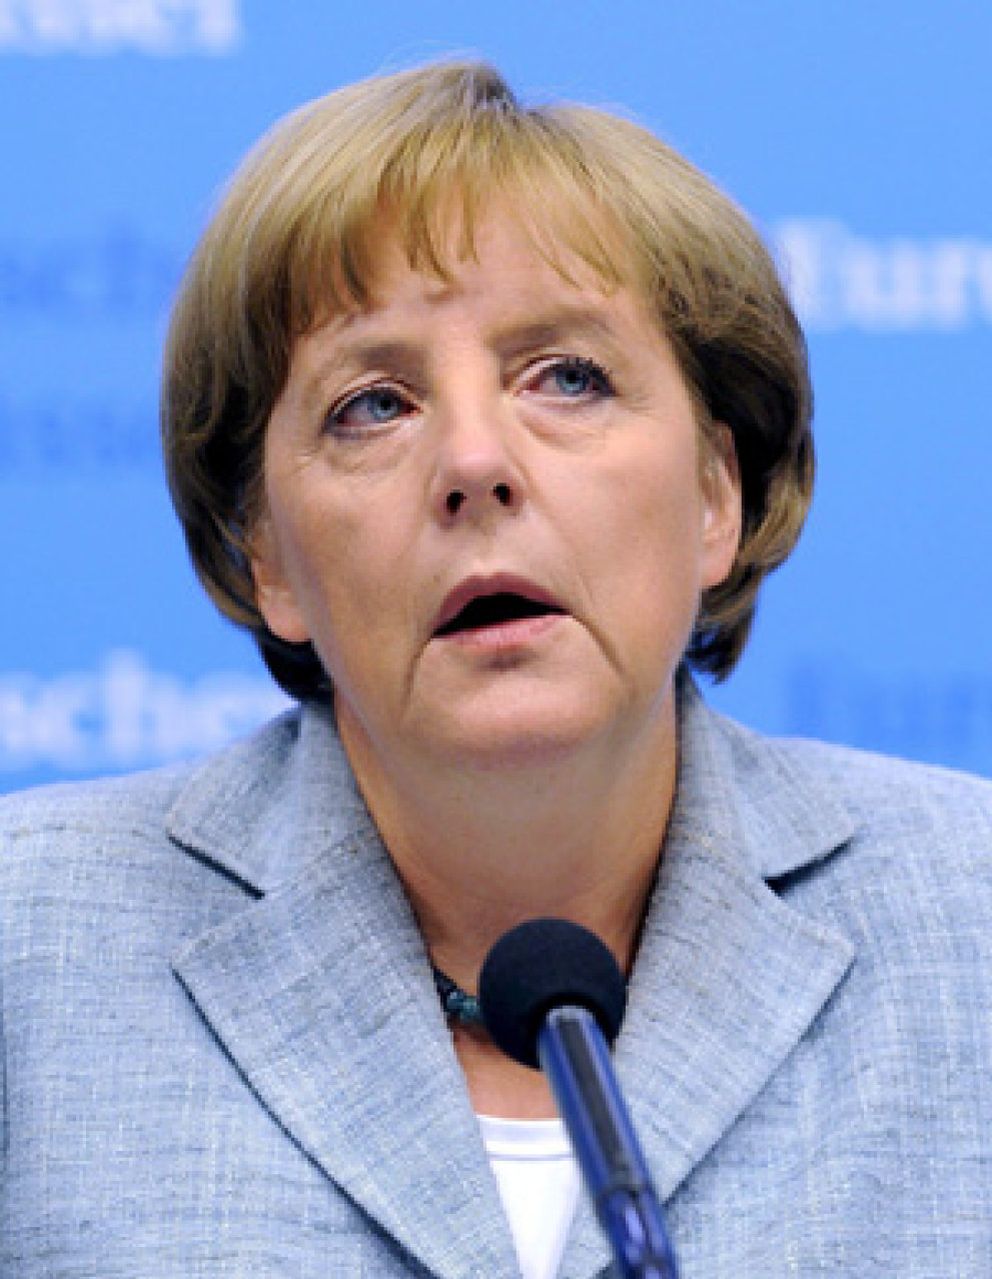 Foto: Merkel revela su afición por barra fija de gimnasia aunque no sea su "fuerte"